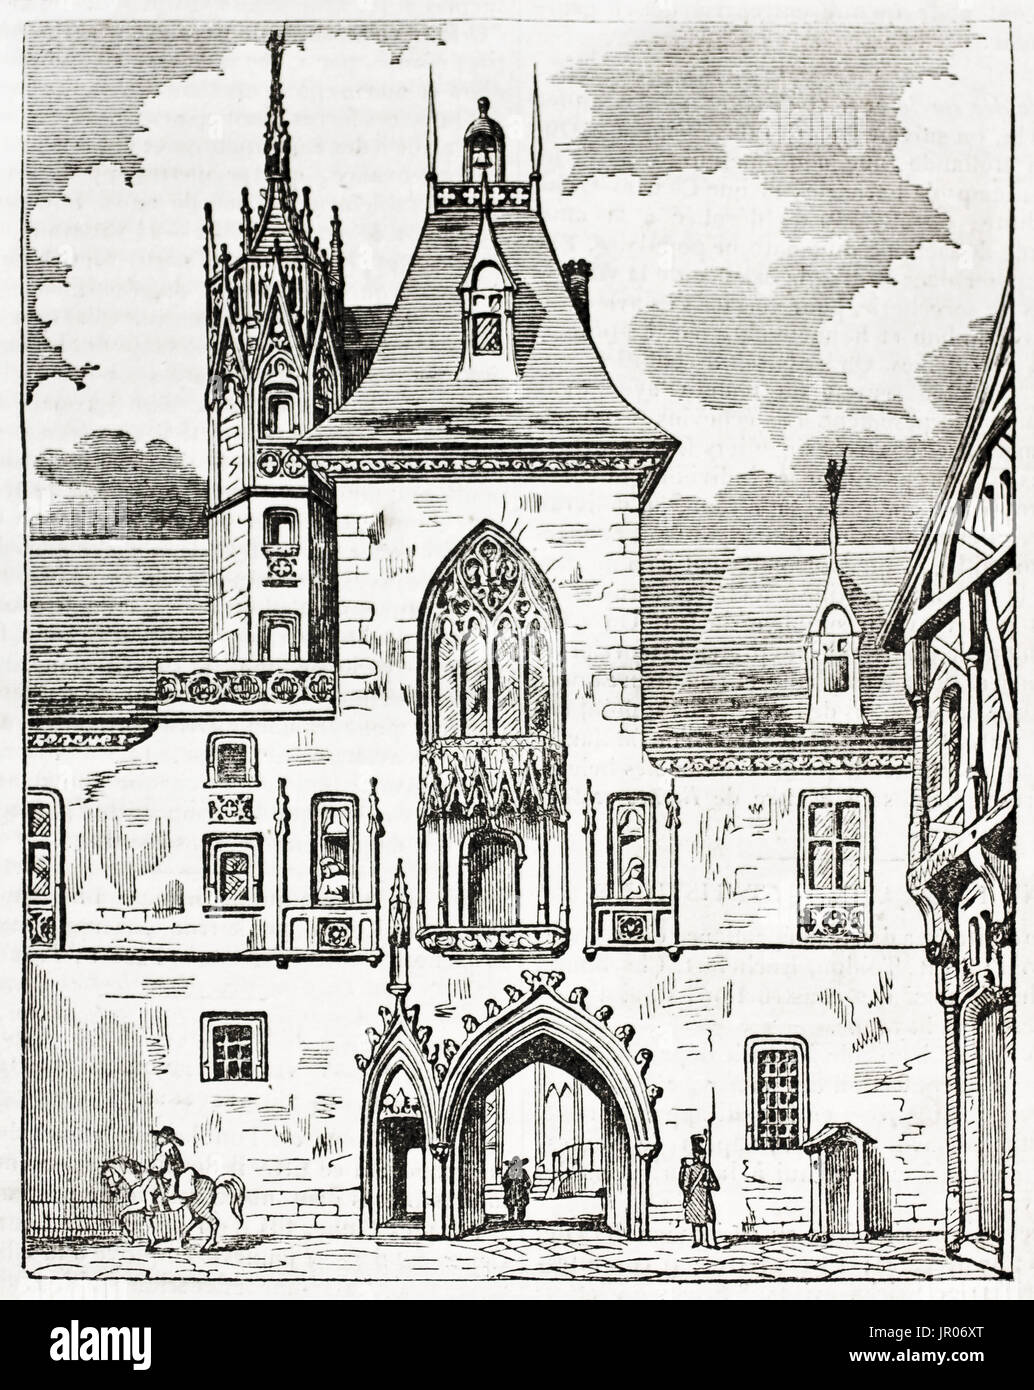 Alten graviert Abbildung von Jacques Cœur Palace, Bourges, Frankreich. Erstellt von Andrew, Best und Leloir, veröffentlicht am Magasin Pittoresque, Paris, 1833. Stockfoto